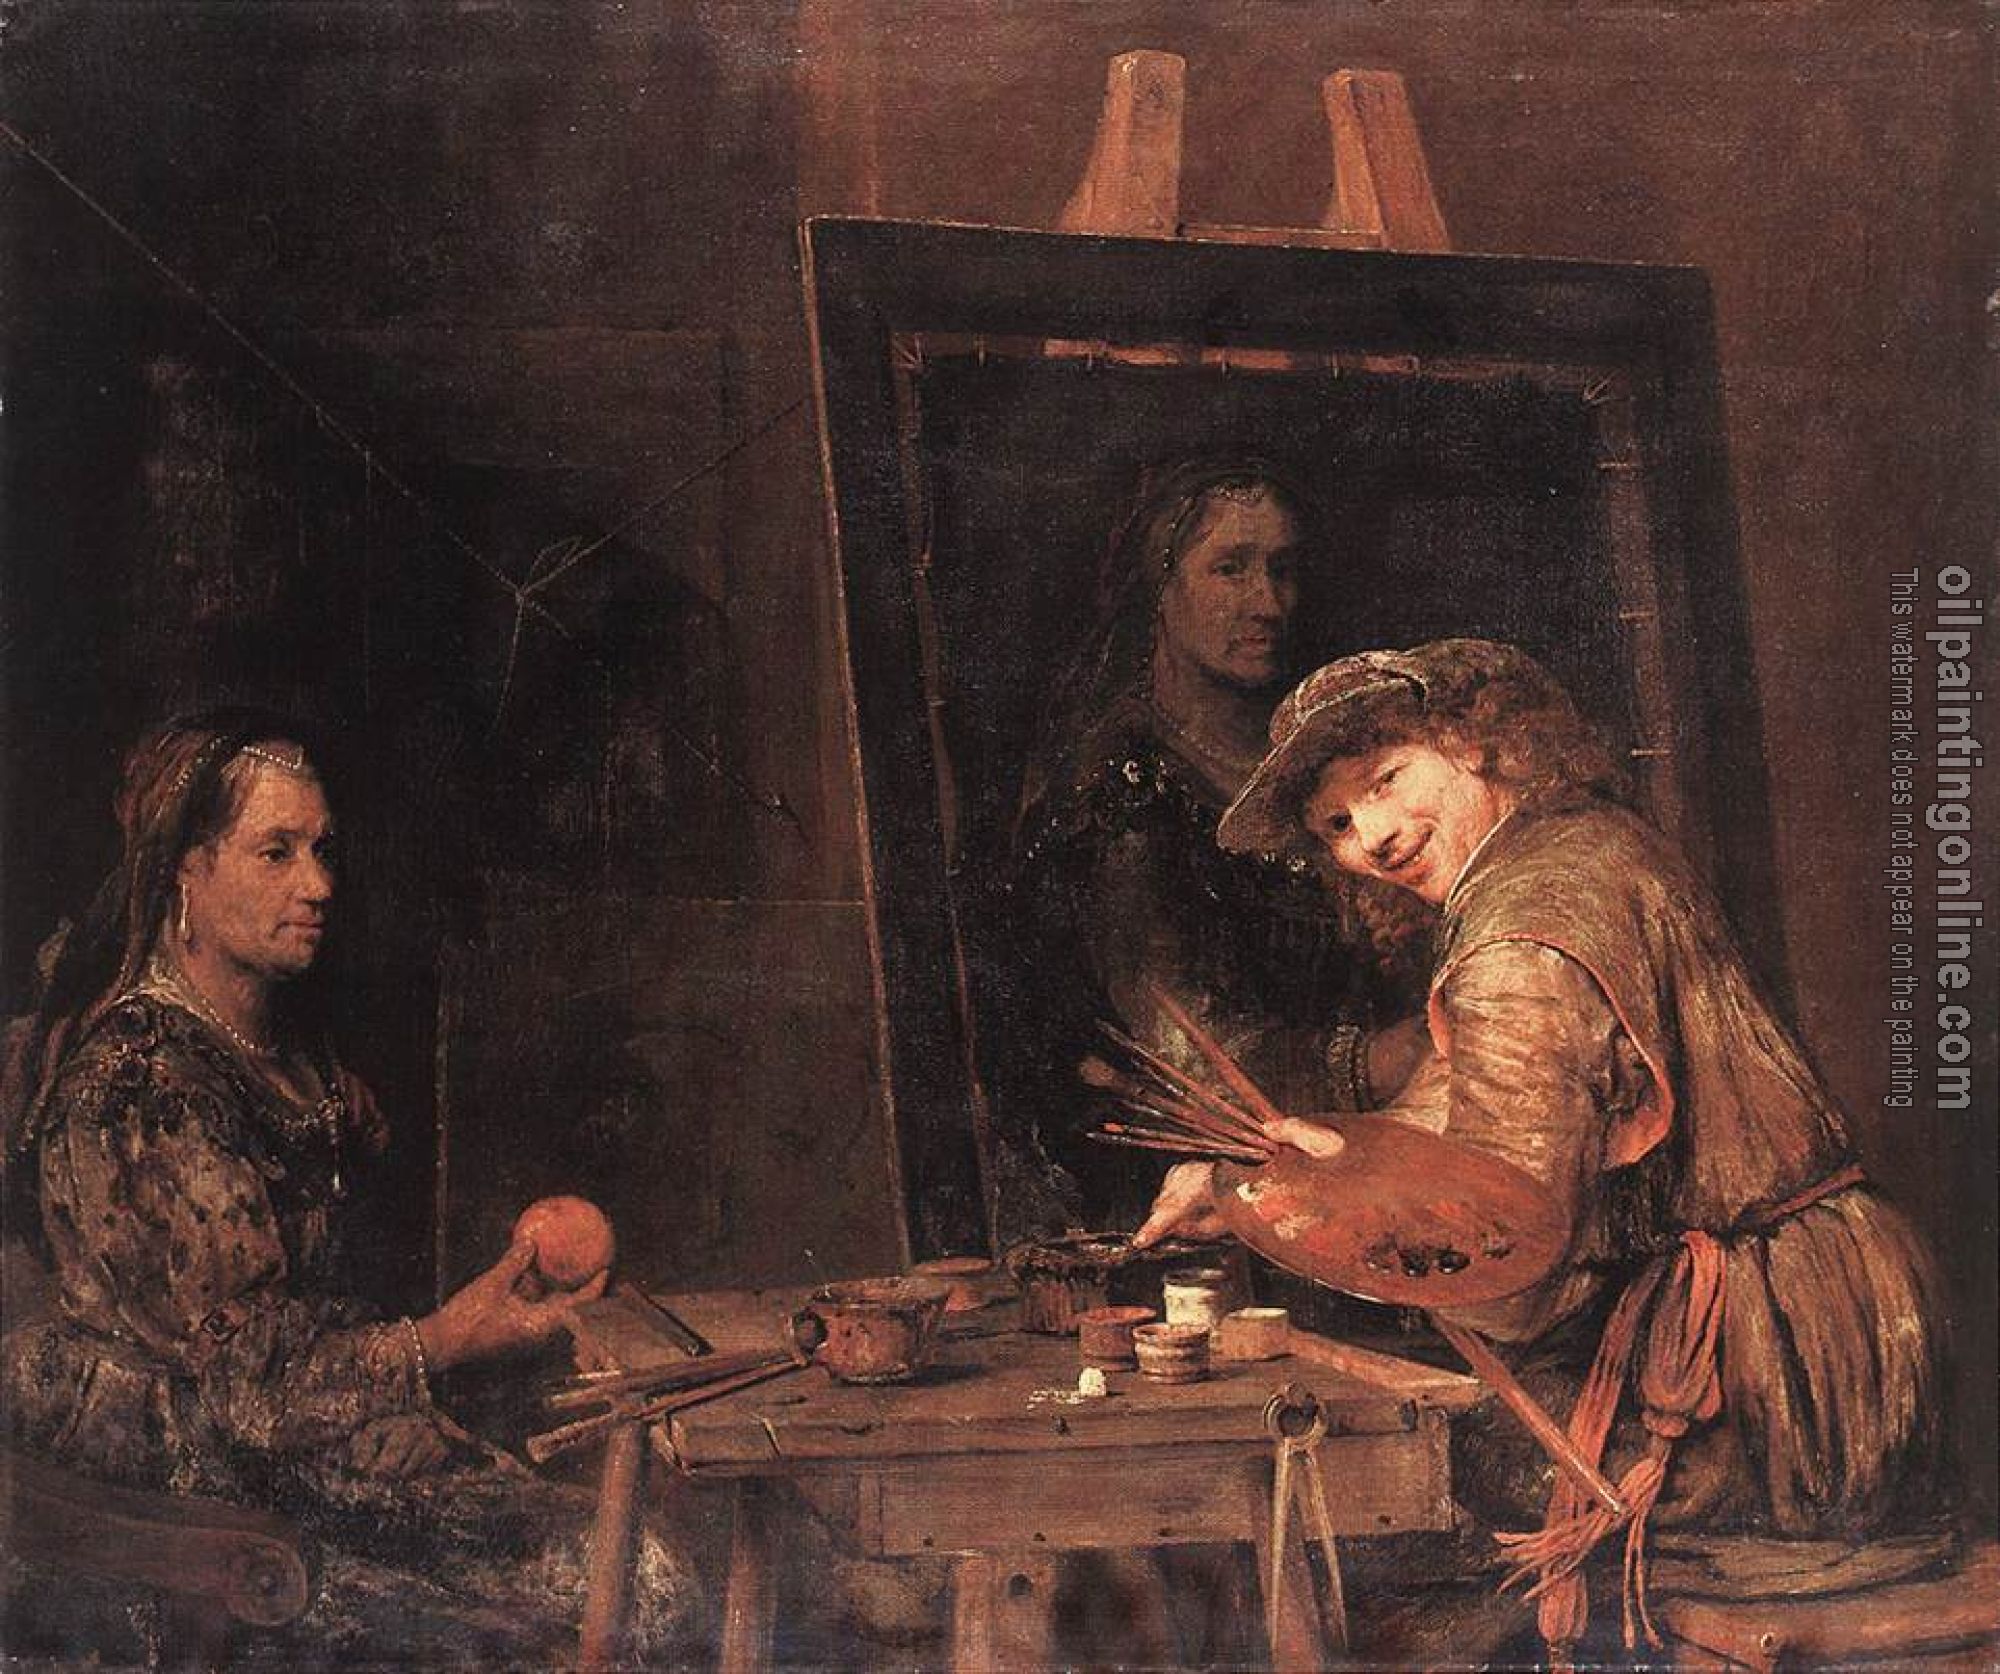 Gelder, Aert de - Self-Portrait at an Easel Painting an Old Woman